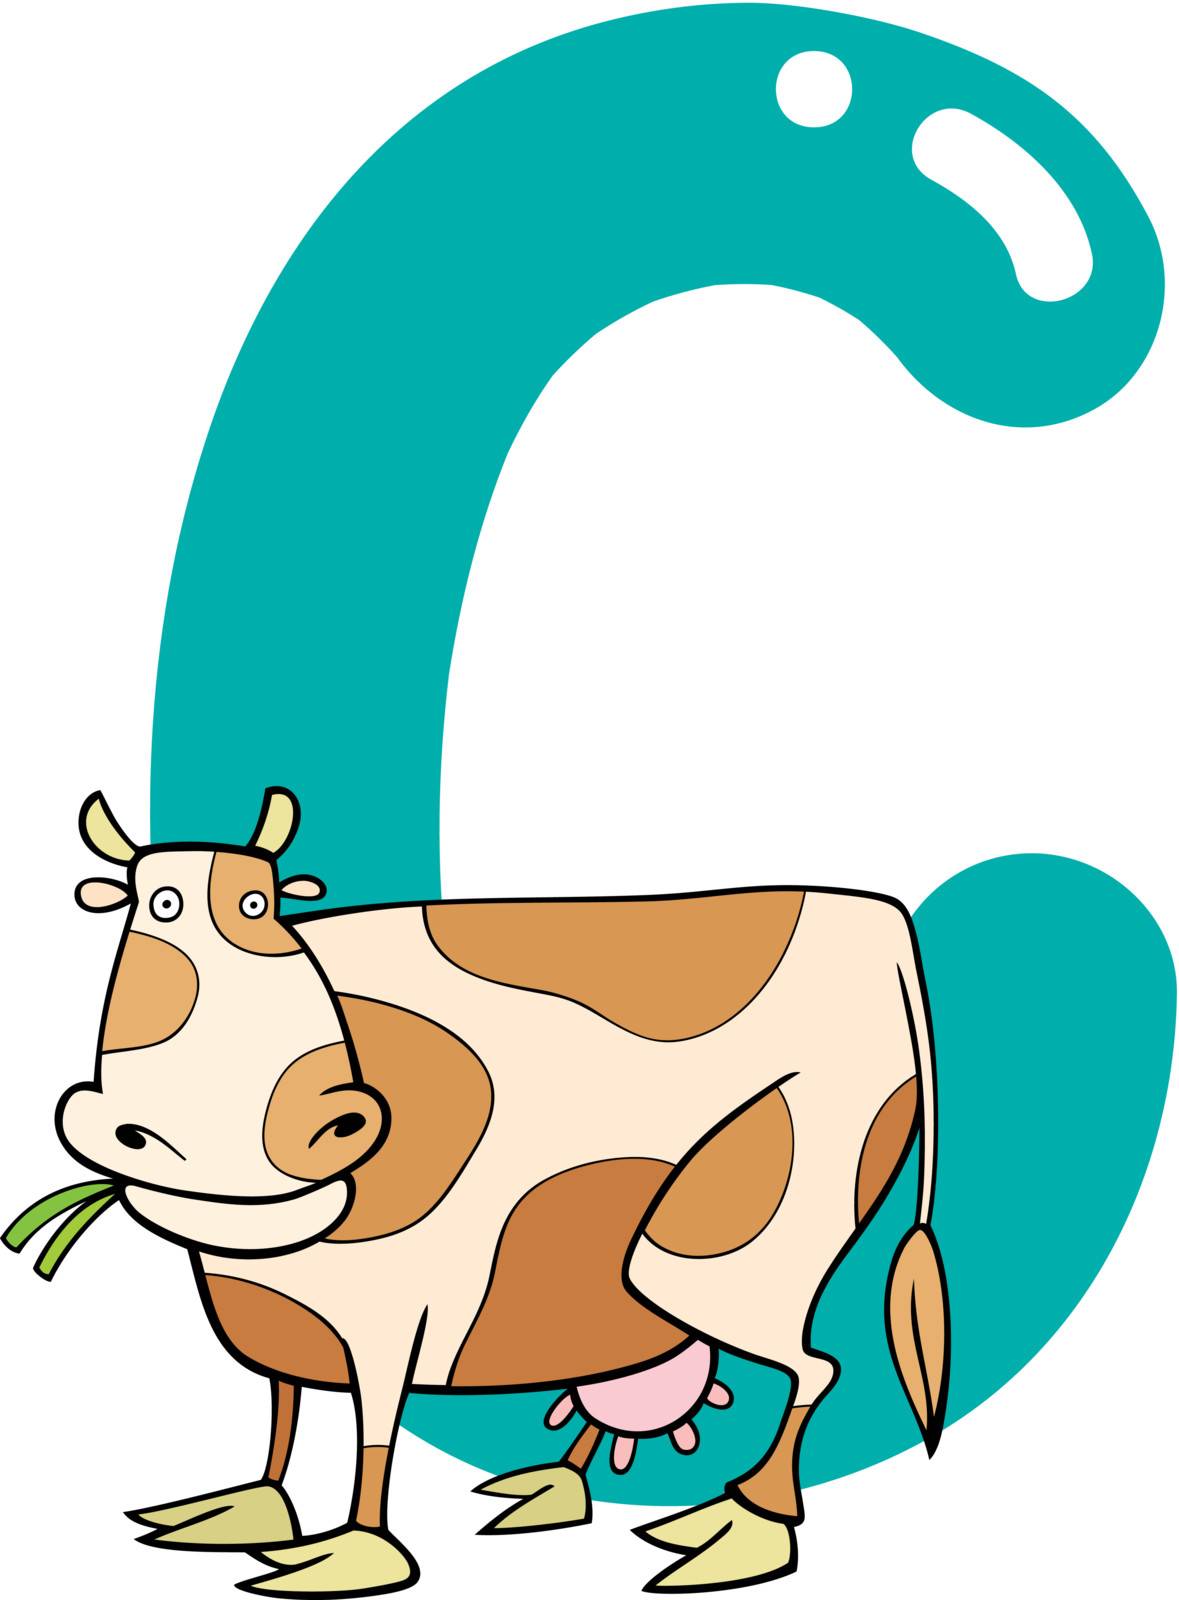 C for cow by izakowski